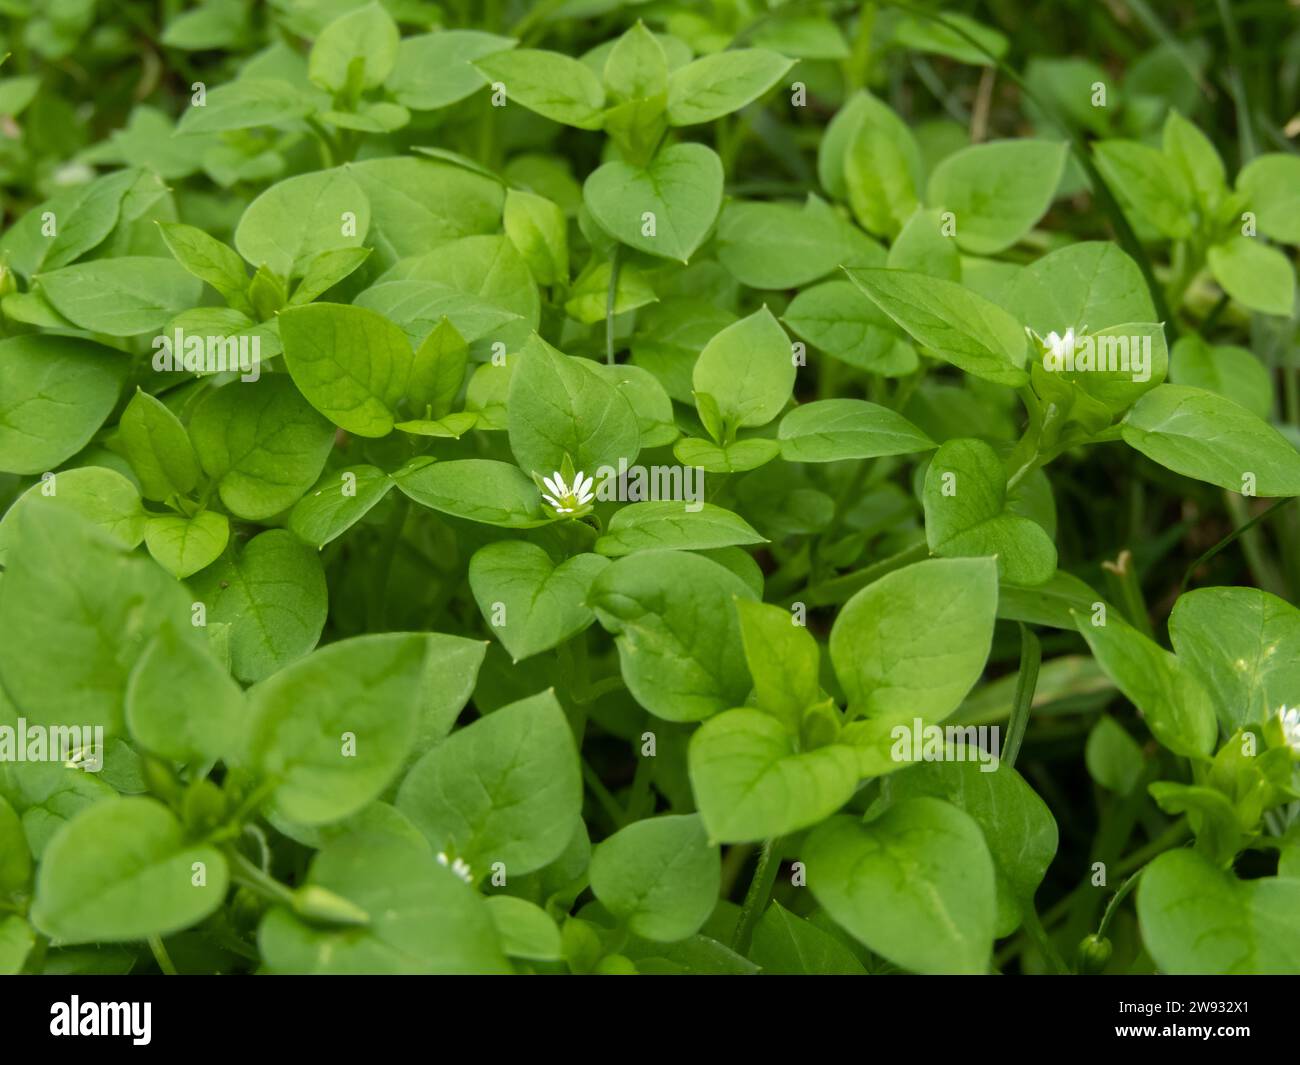 Stellaria Media oder Kicherkraut oder Winterkraut weiße Blume. Unkrautpflanze. Essbare Salatpflanze und pflanzliche Heilpflanze. Stockfoto